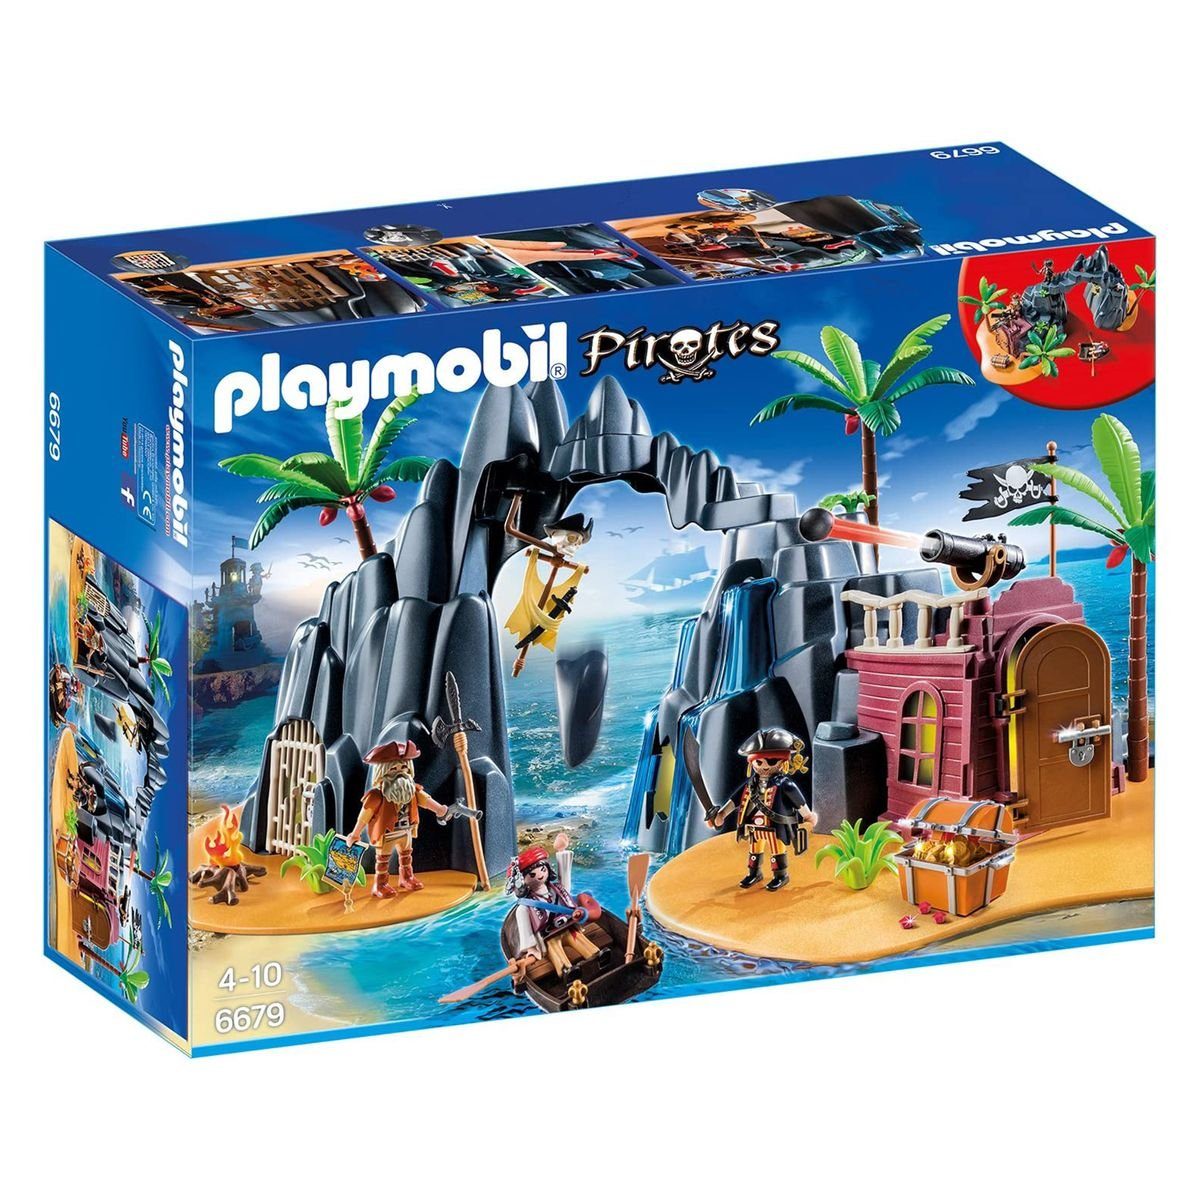 Grøn baggrund Etna venlige Playmobil® Spielwelt Pirates 6679 Piraten Schatzinsel Insel Boot,  Gefängnis-Zelle Figuren Schatz Kanone Rudeboot Höhle